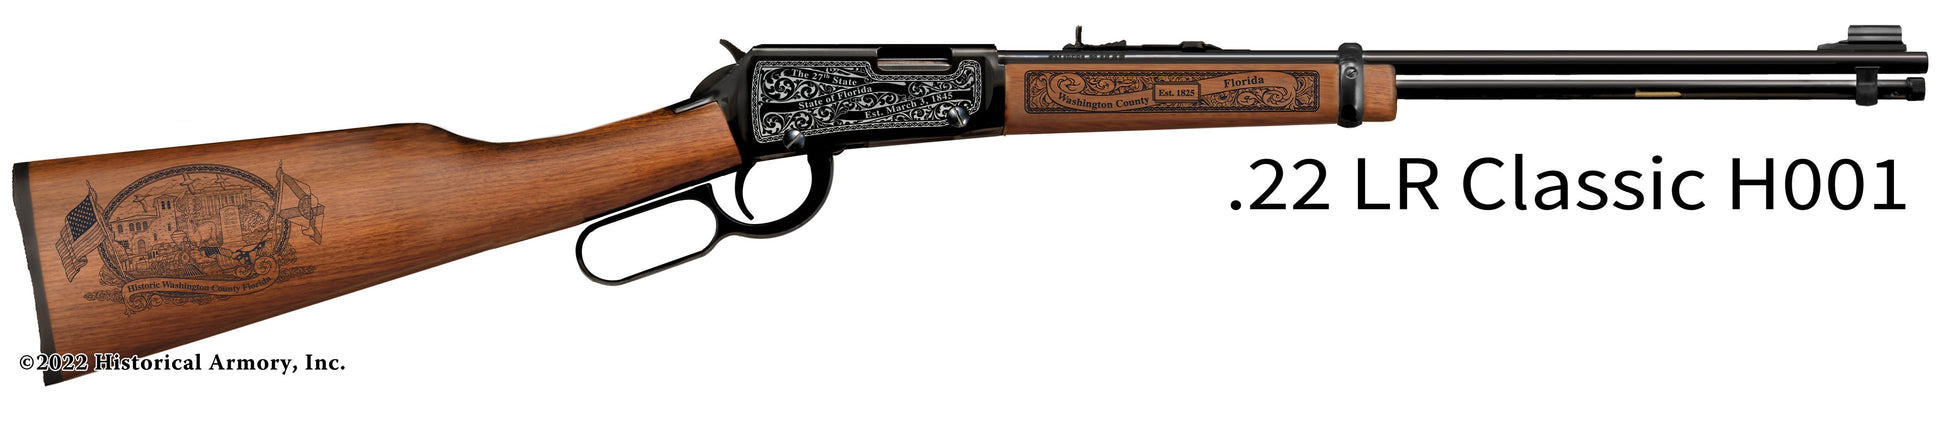 Washington County Florida Engraved Henry H001 Rifle